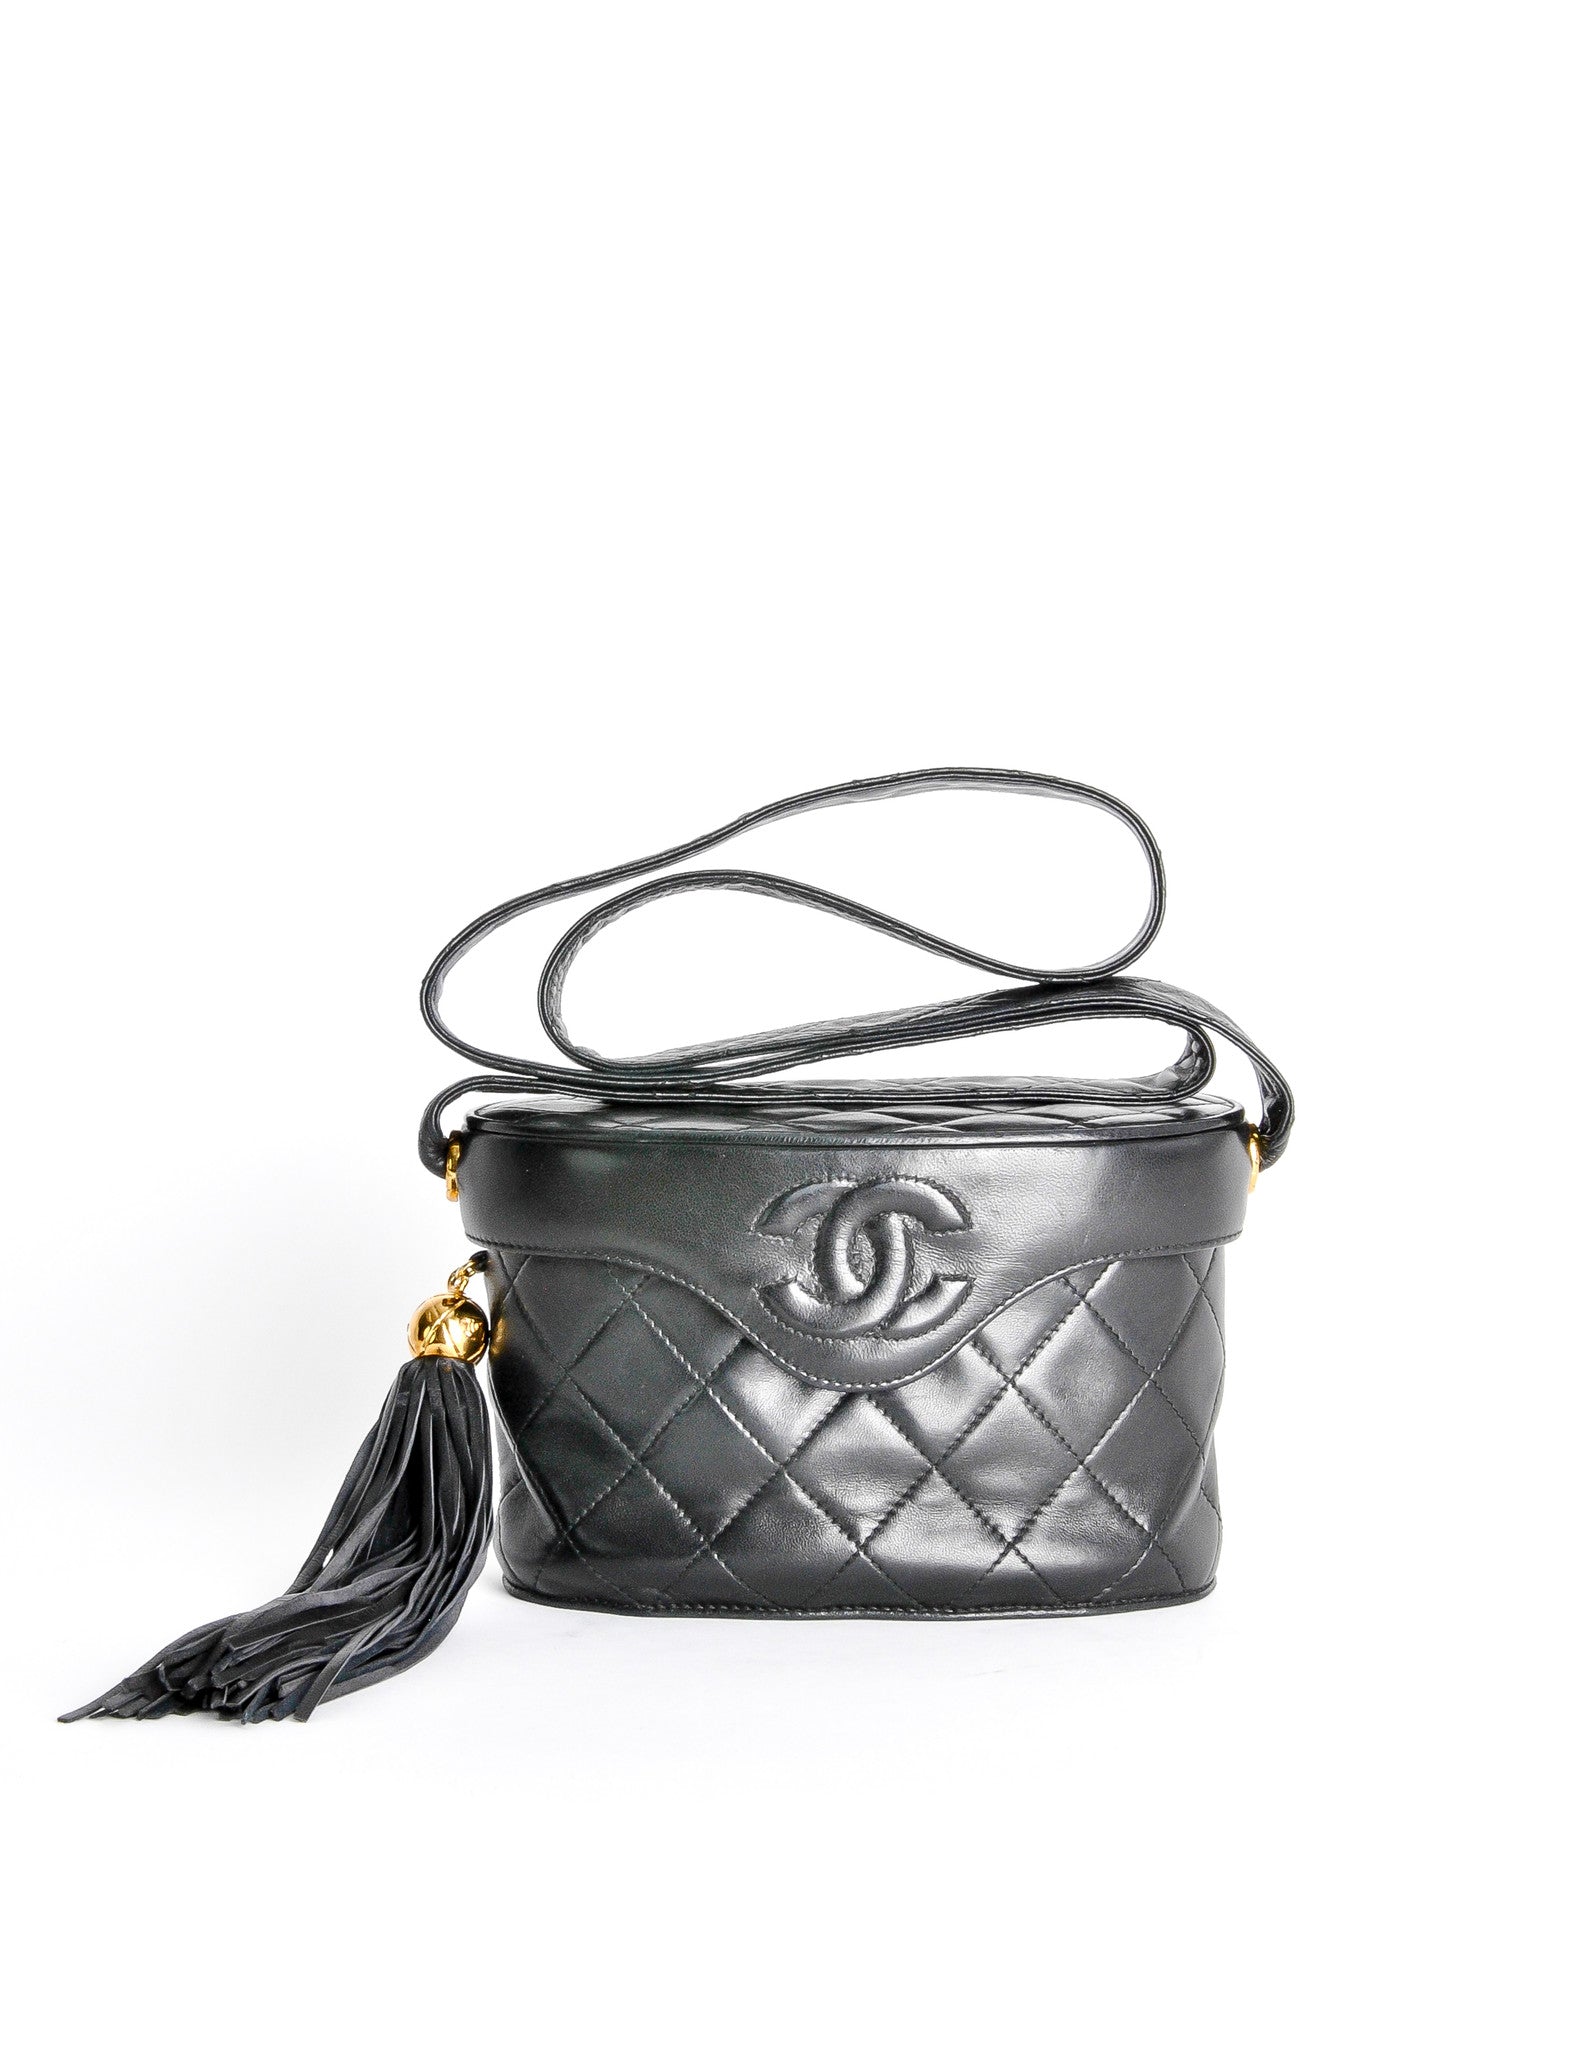 Chanel Vintage Black Quilted Lambskin Tassel Bag